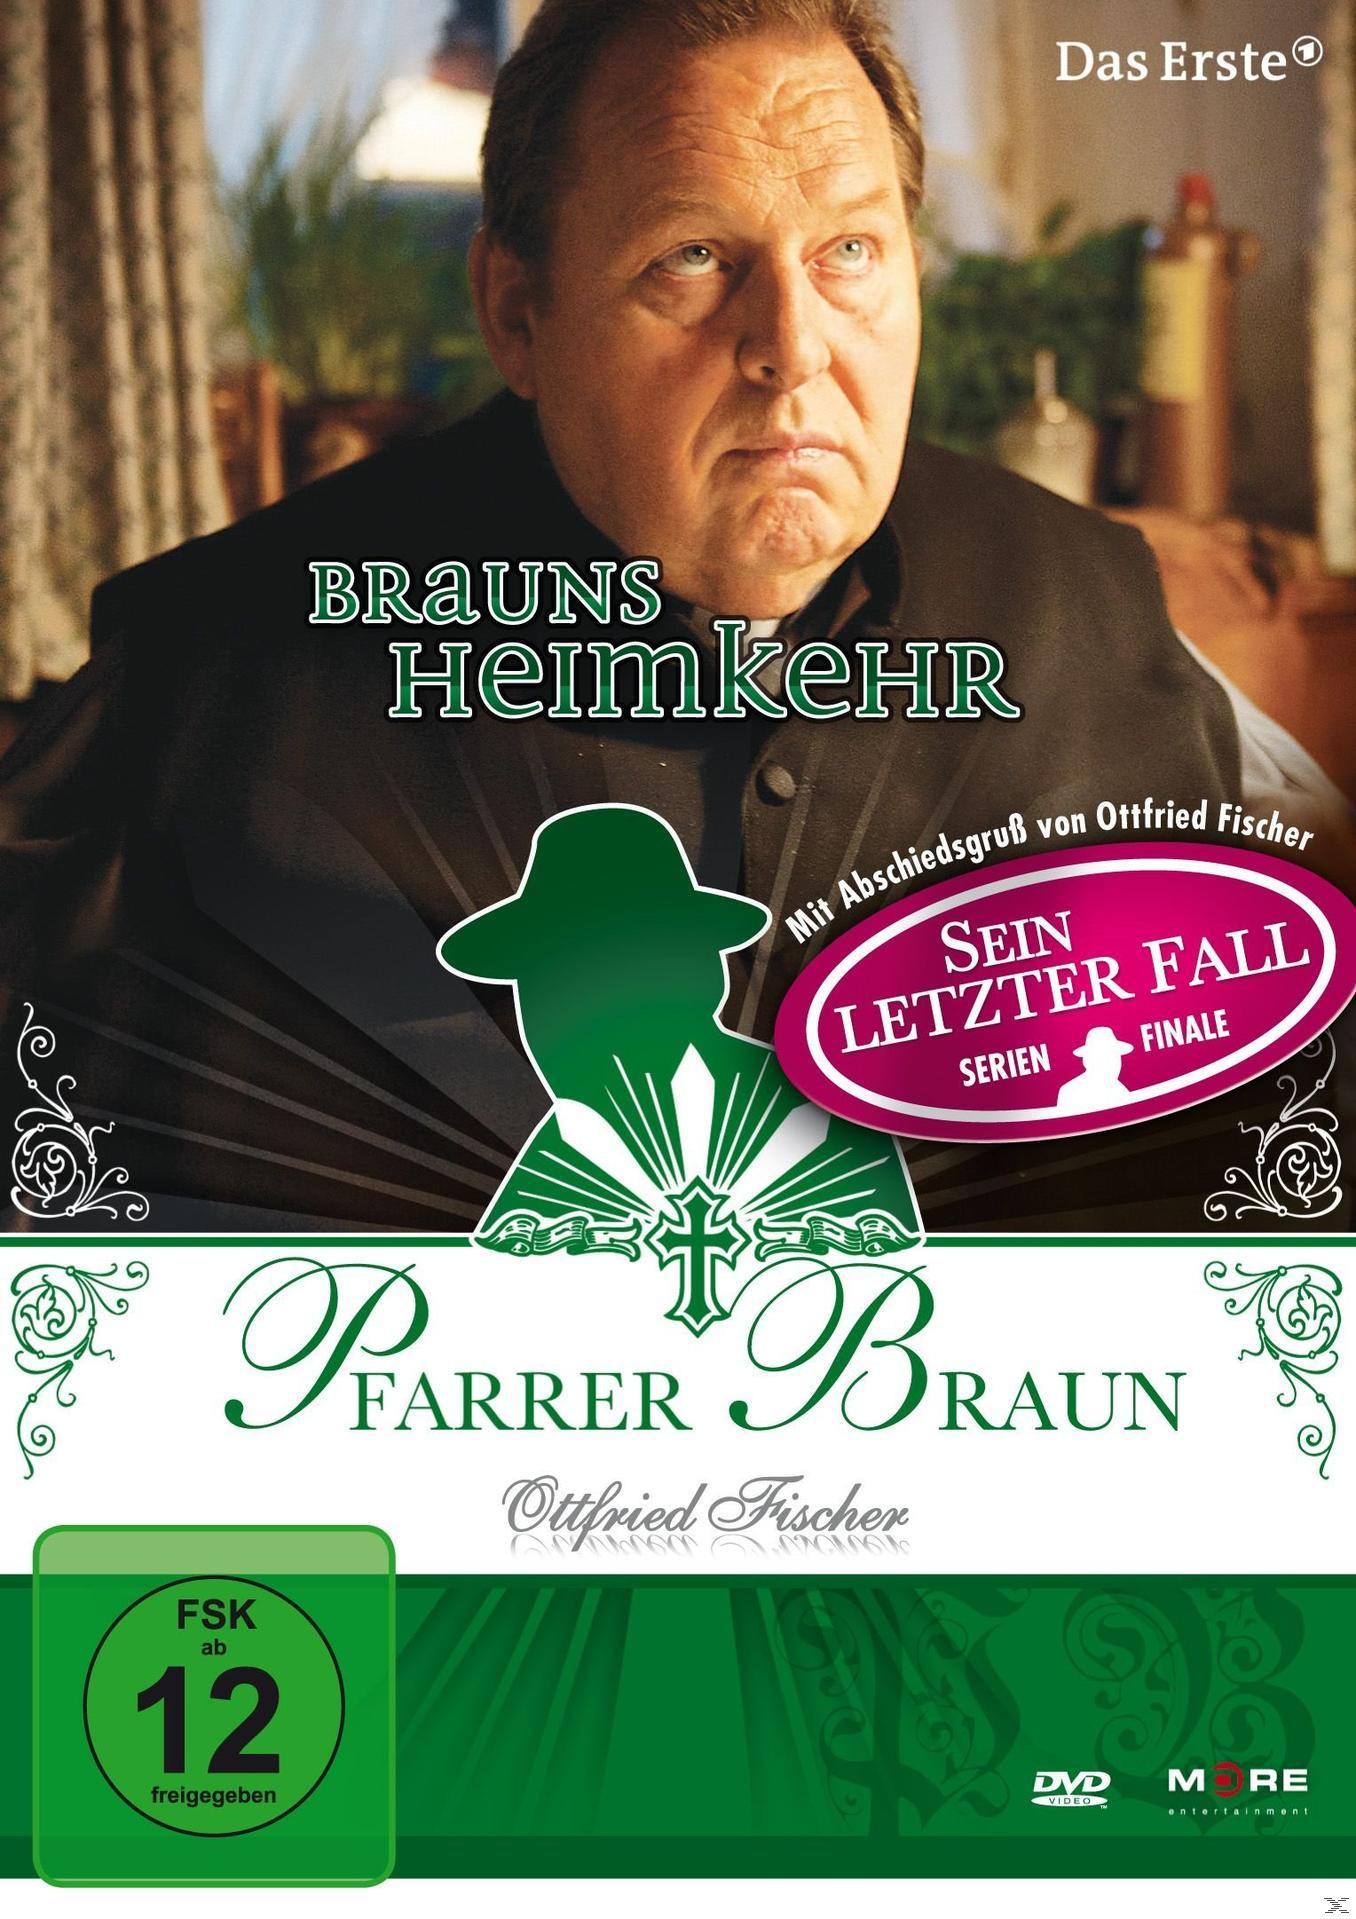 Brauns DVD Pfarrer Heimkehr Braun: